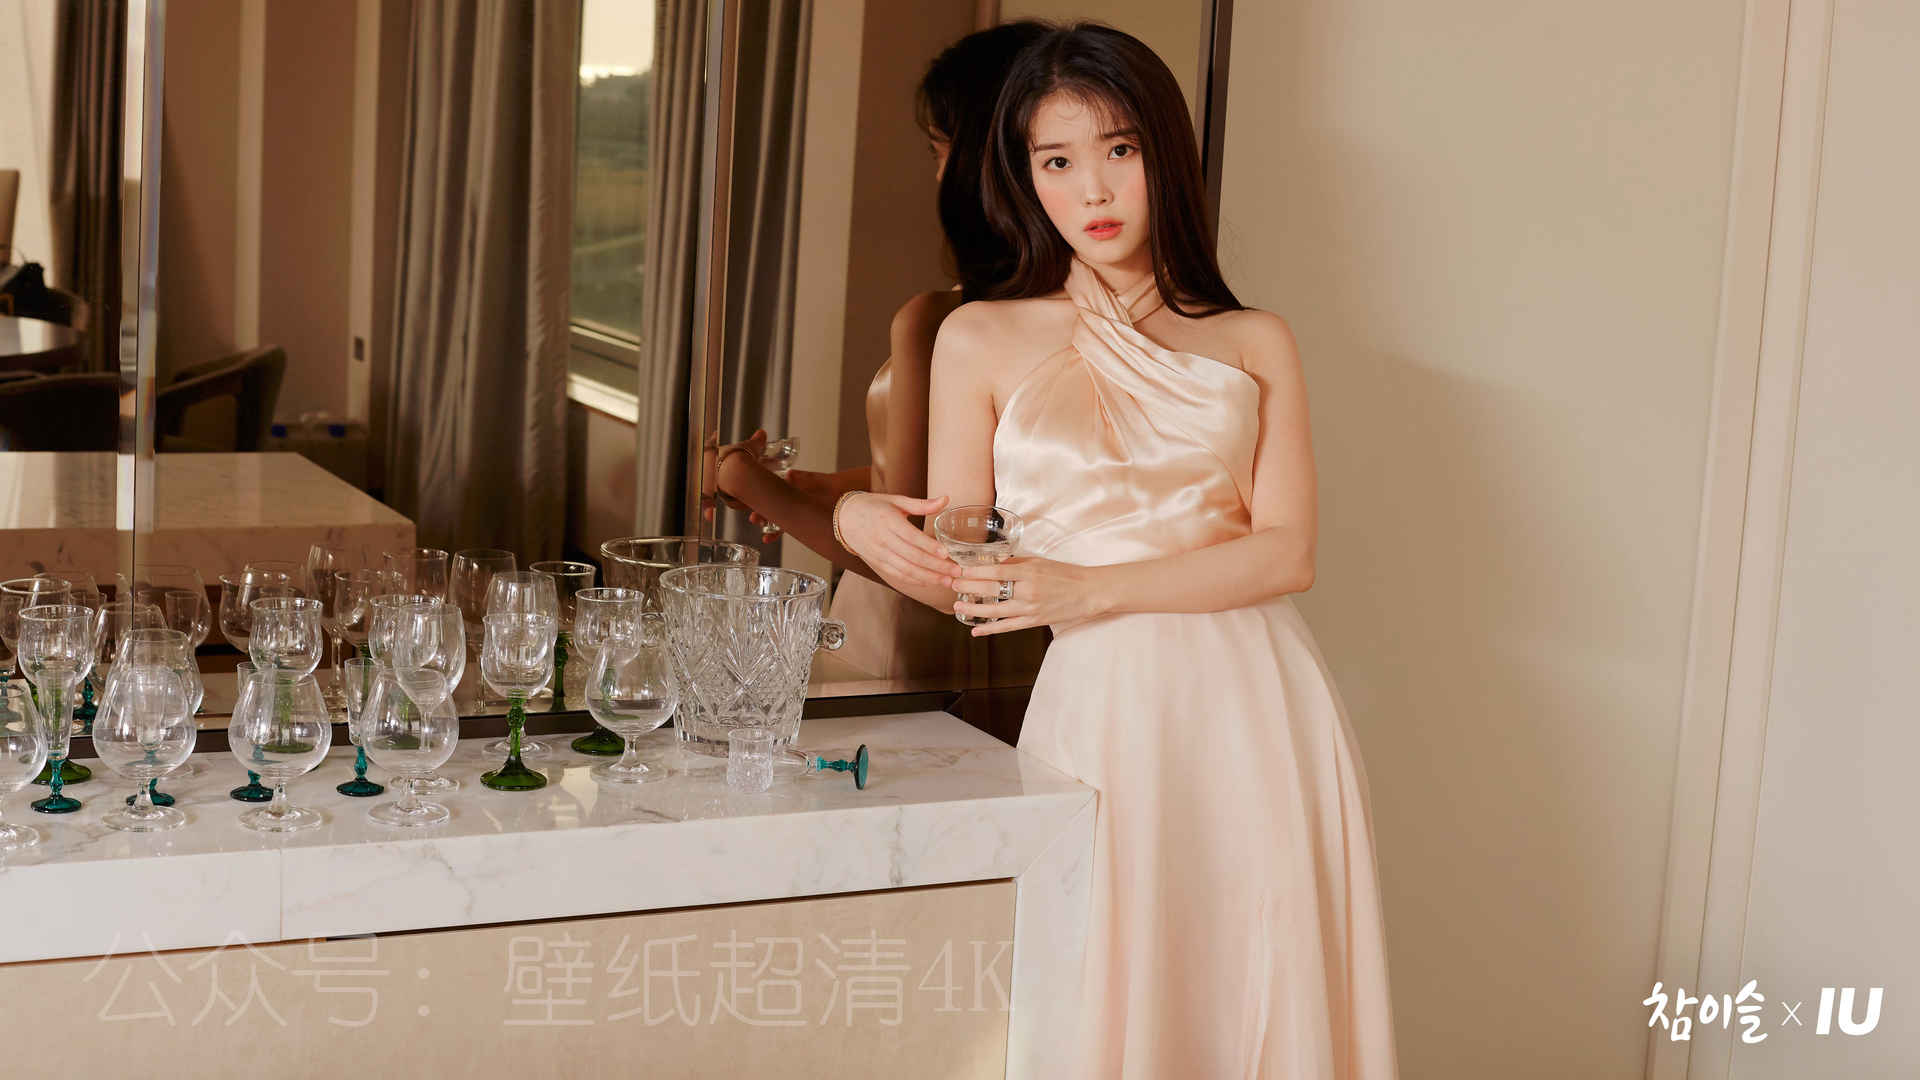 李知恩iu居家写真 玻璃杯 4k美女壁纸-